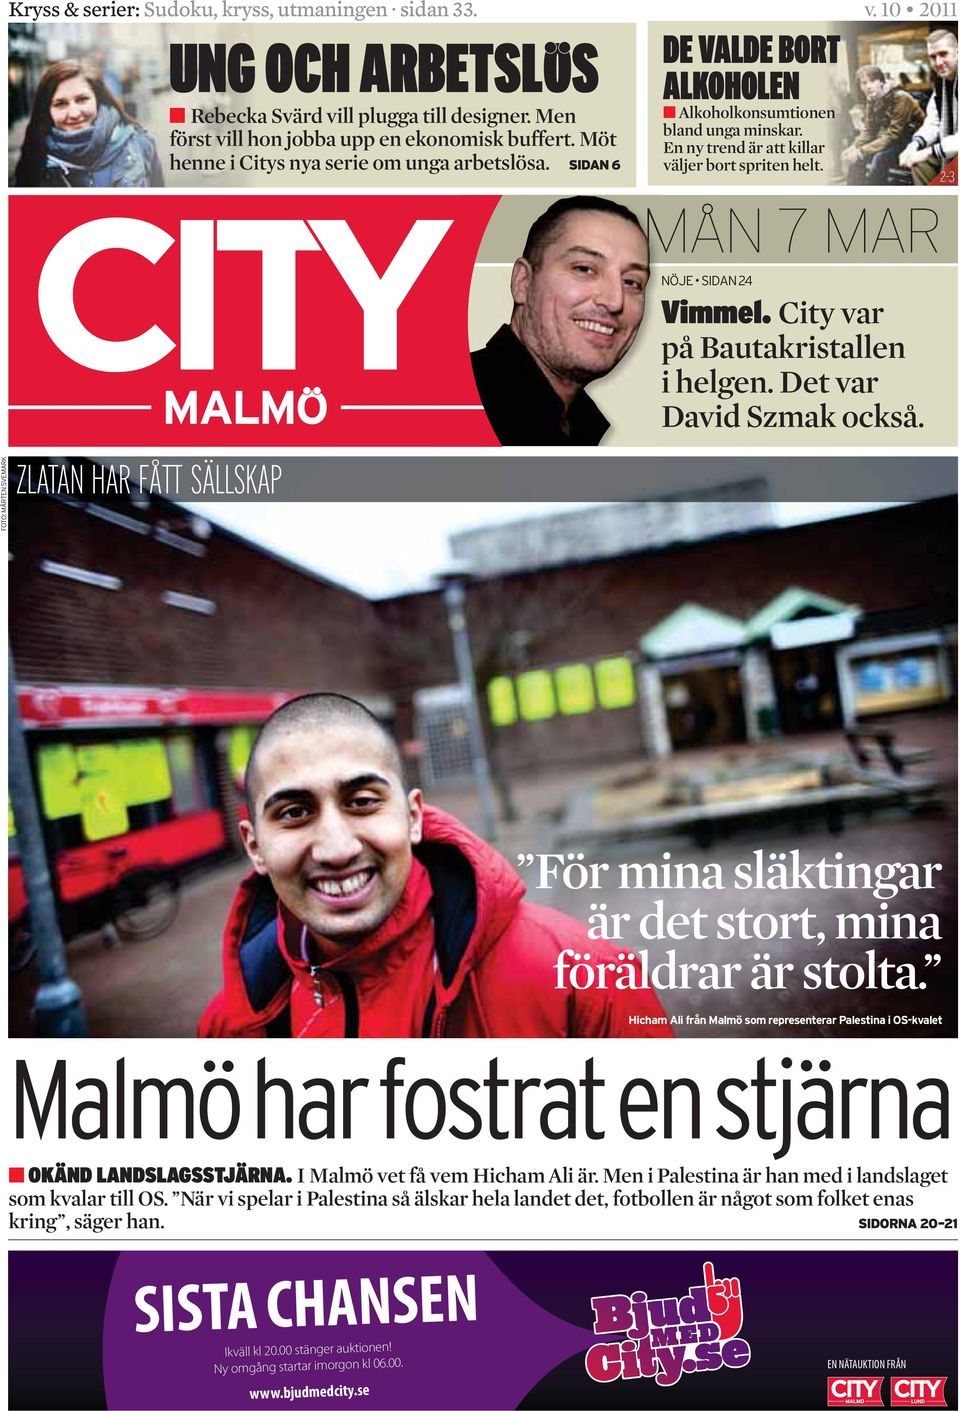 MÅN 7 MAR City var på Bauta kristallen i helgen. Det var David Szmak också. För mina släktingar är det stort, mina föräldrar är stolta. I Malmö vet få vem Hicham Ali är.